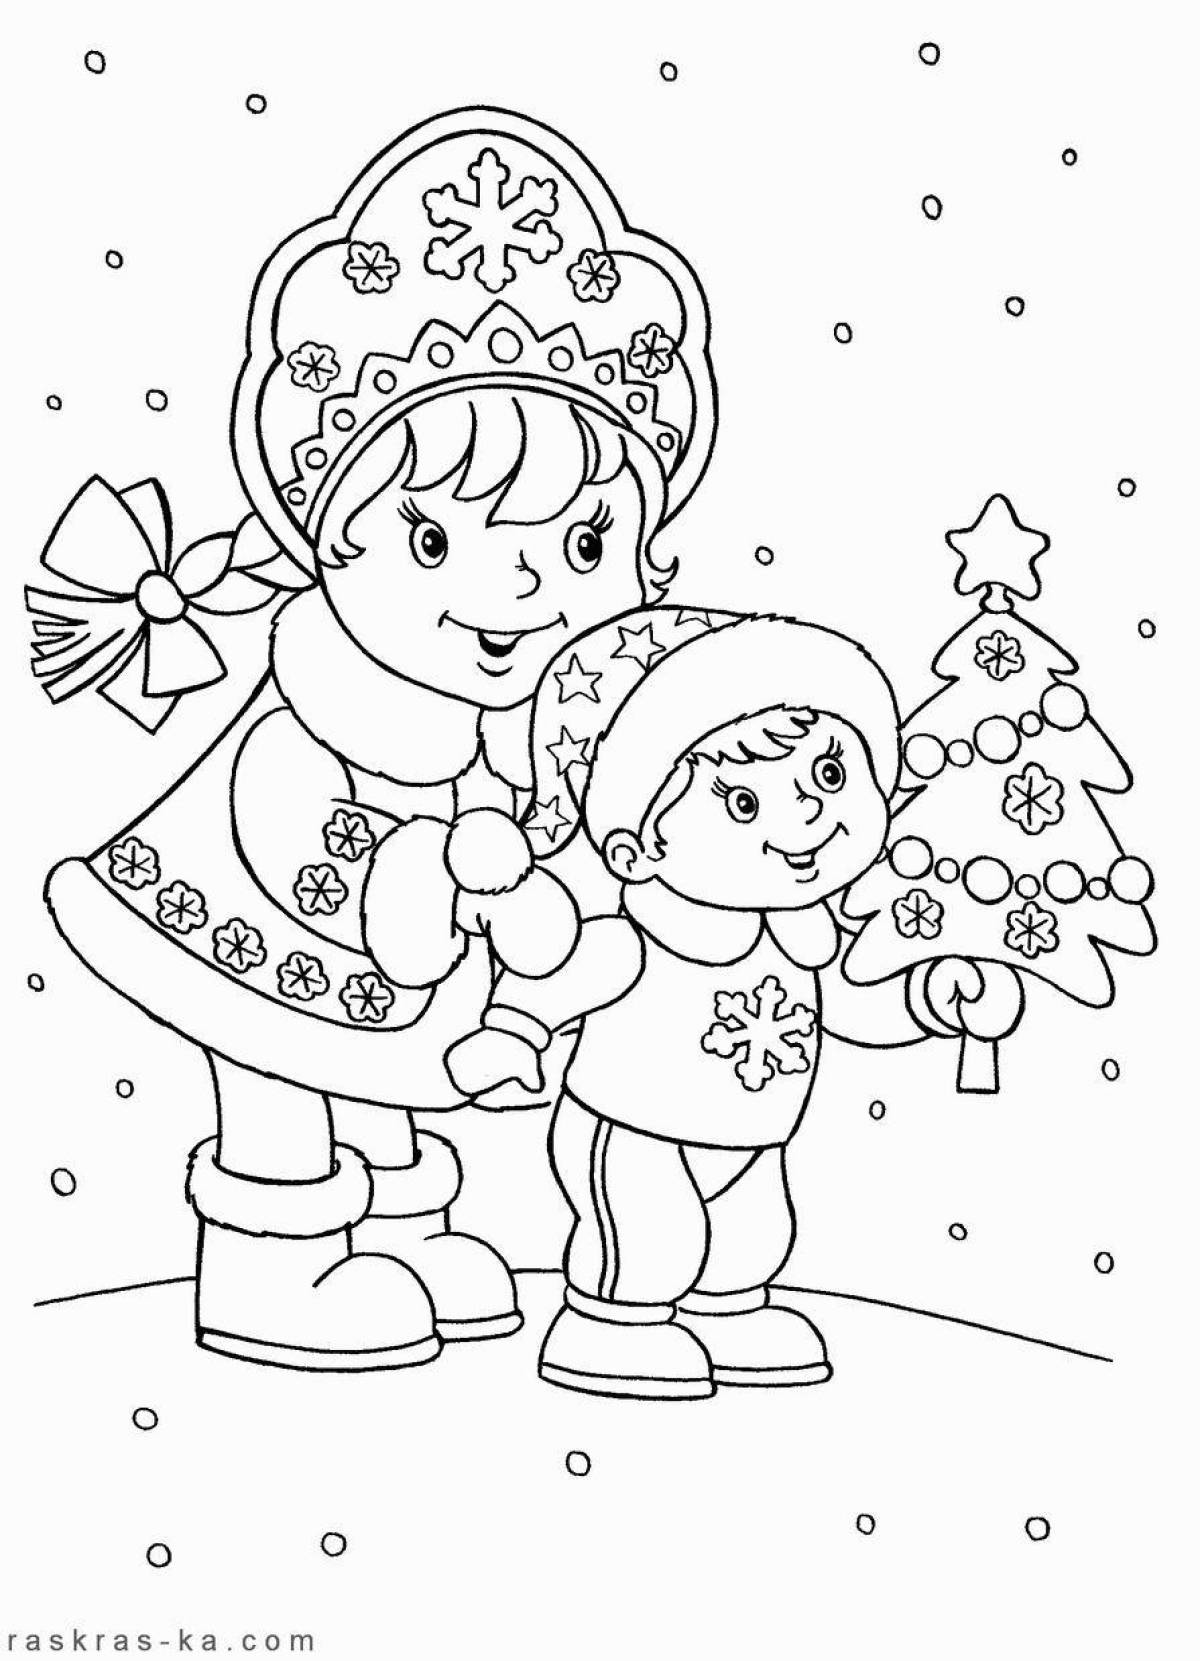 Раскраски Снегурочка - детские раскраски распечатать бесплатно